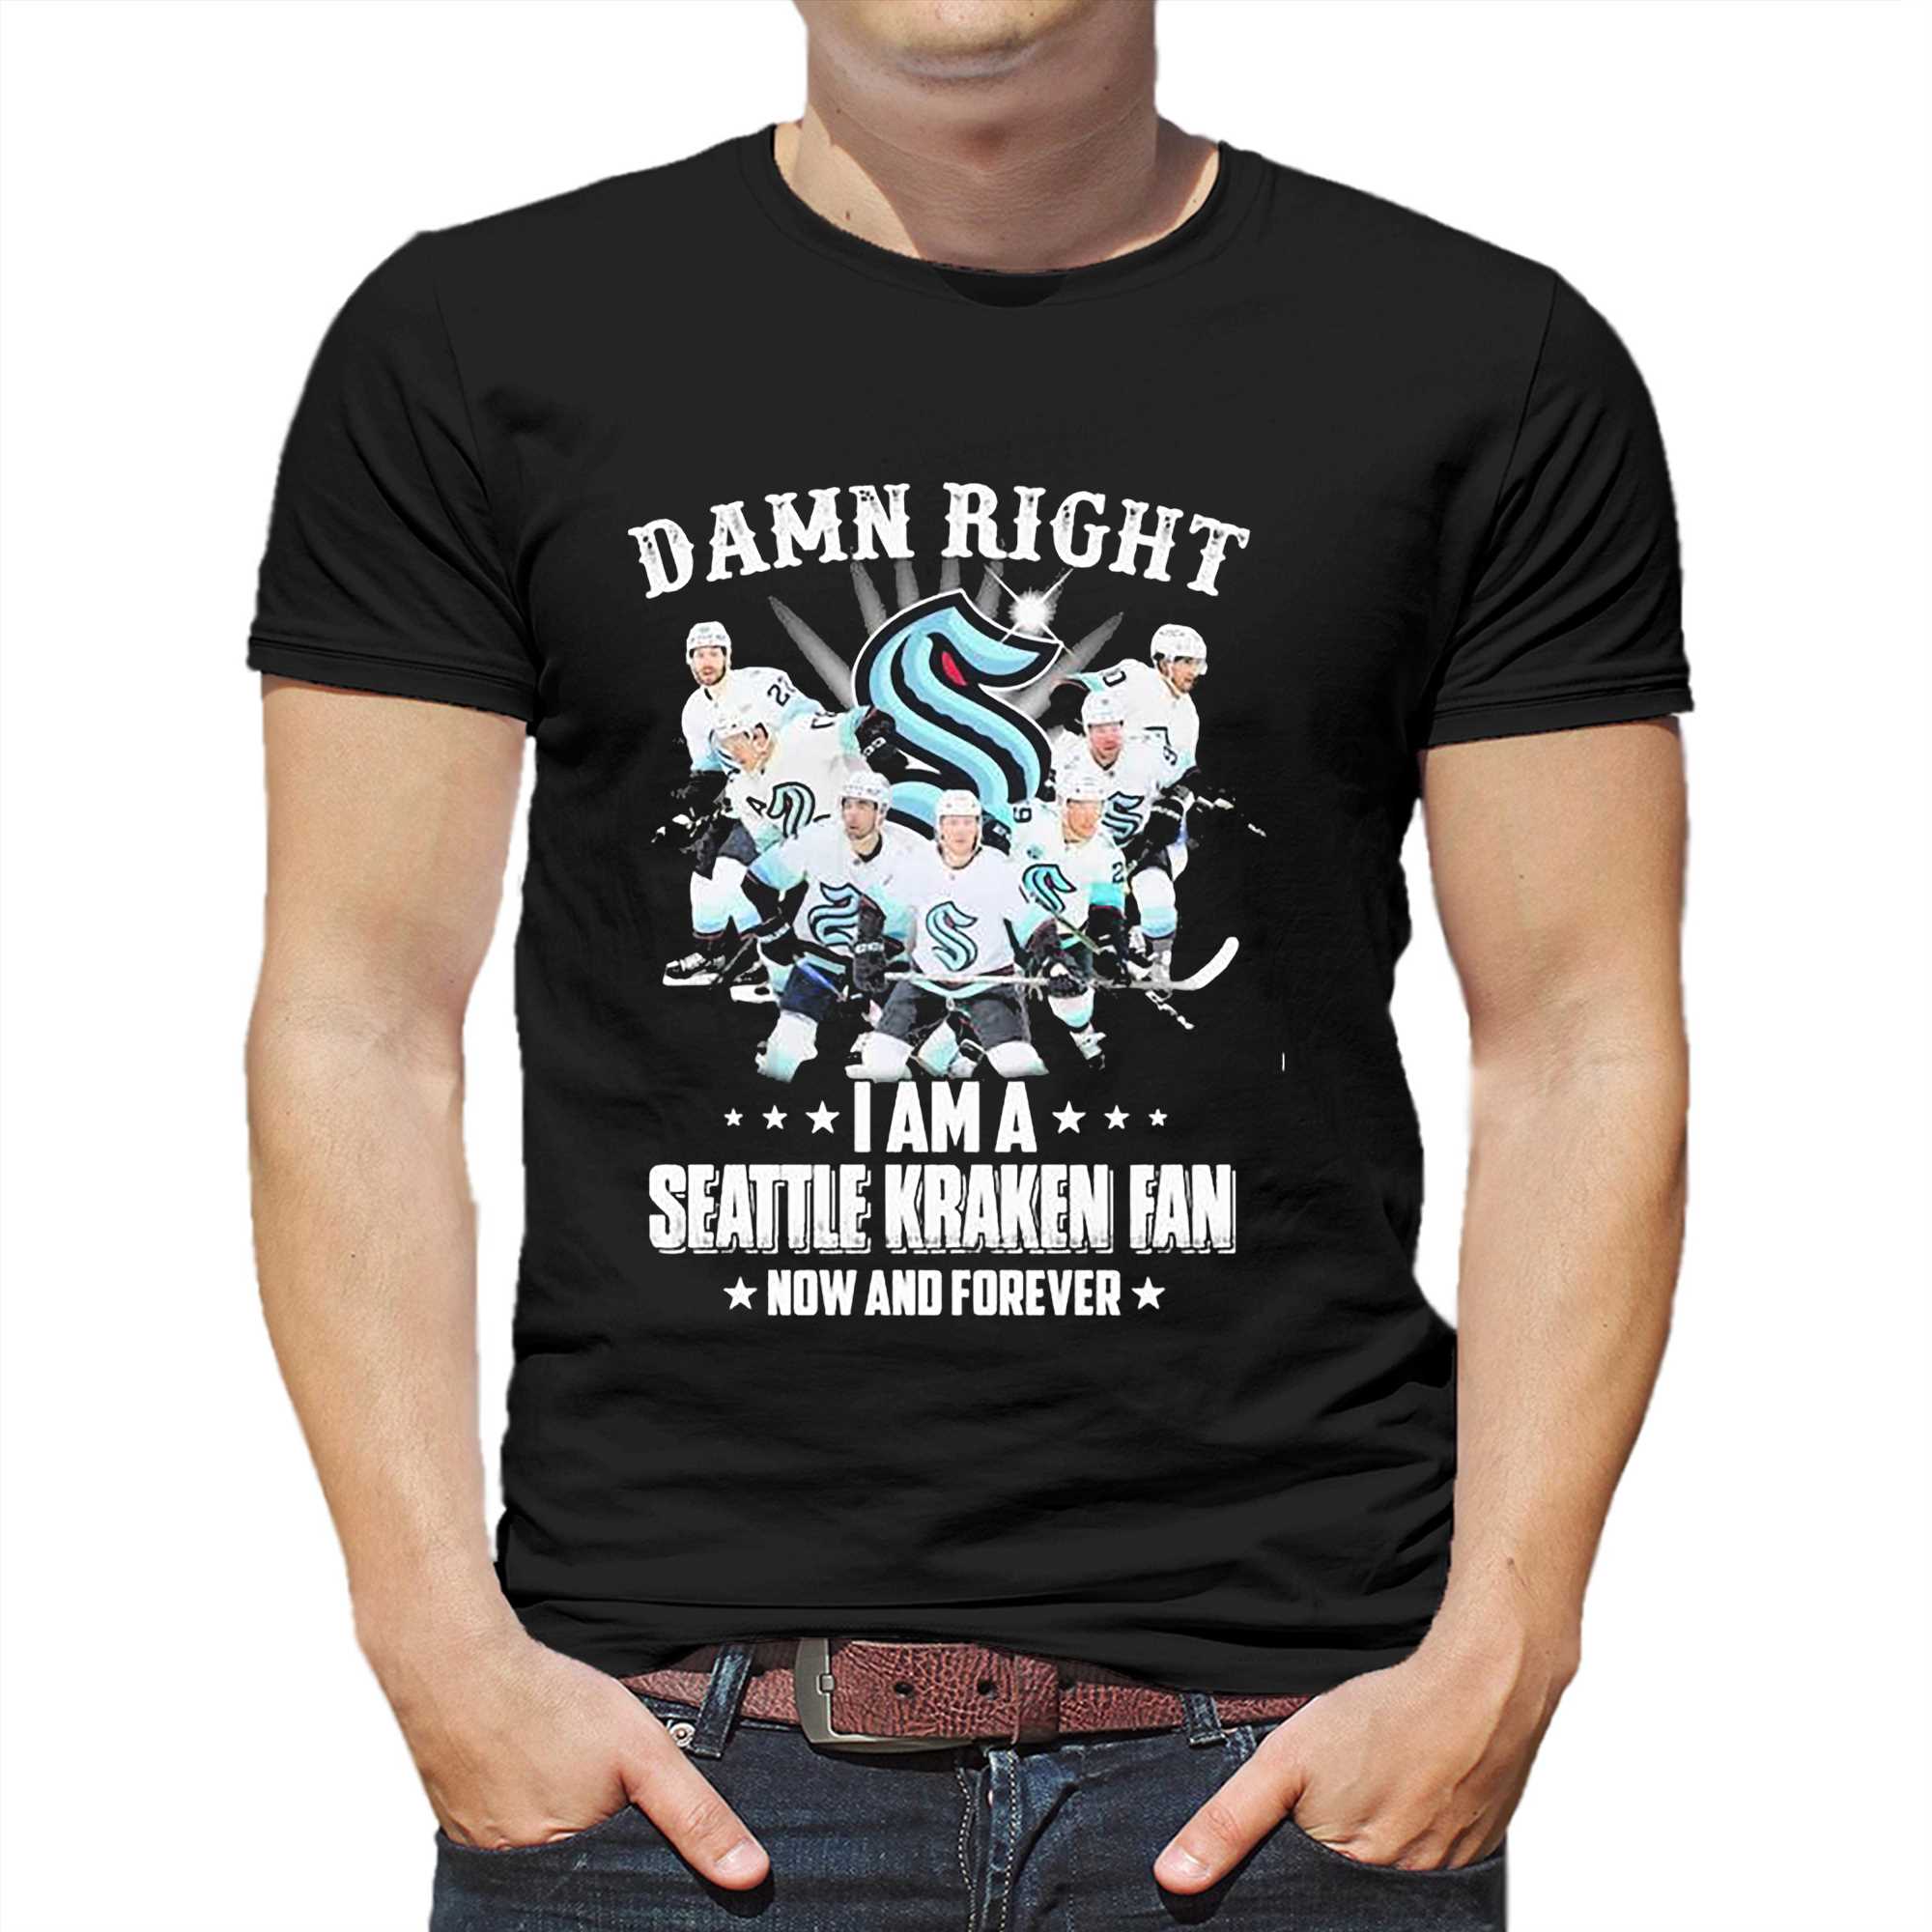  NHL Seattle Kraken Fan Tank Top : Clothing, Shoes